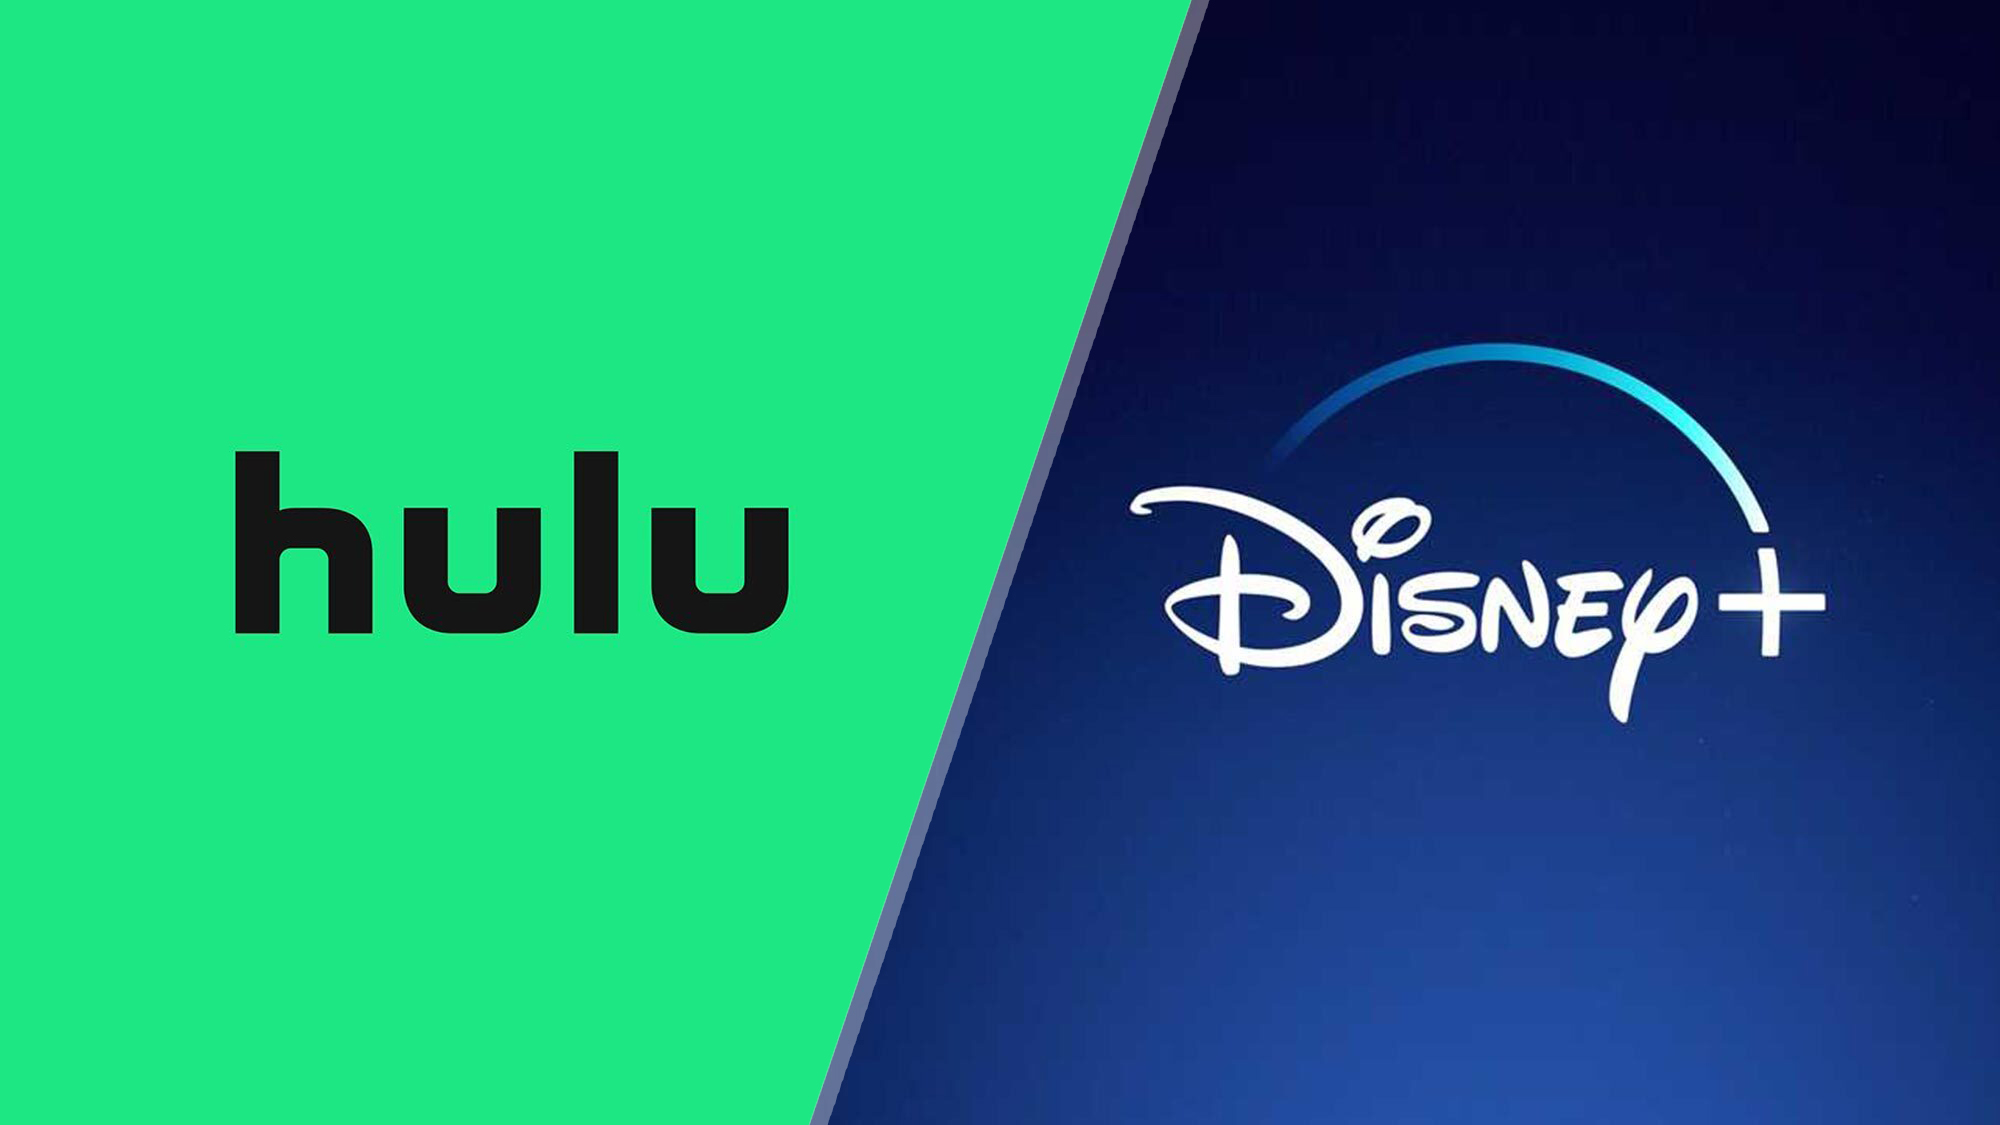 (De gauche à droite) Les logos Hulu, Disney Plus